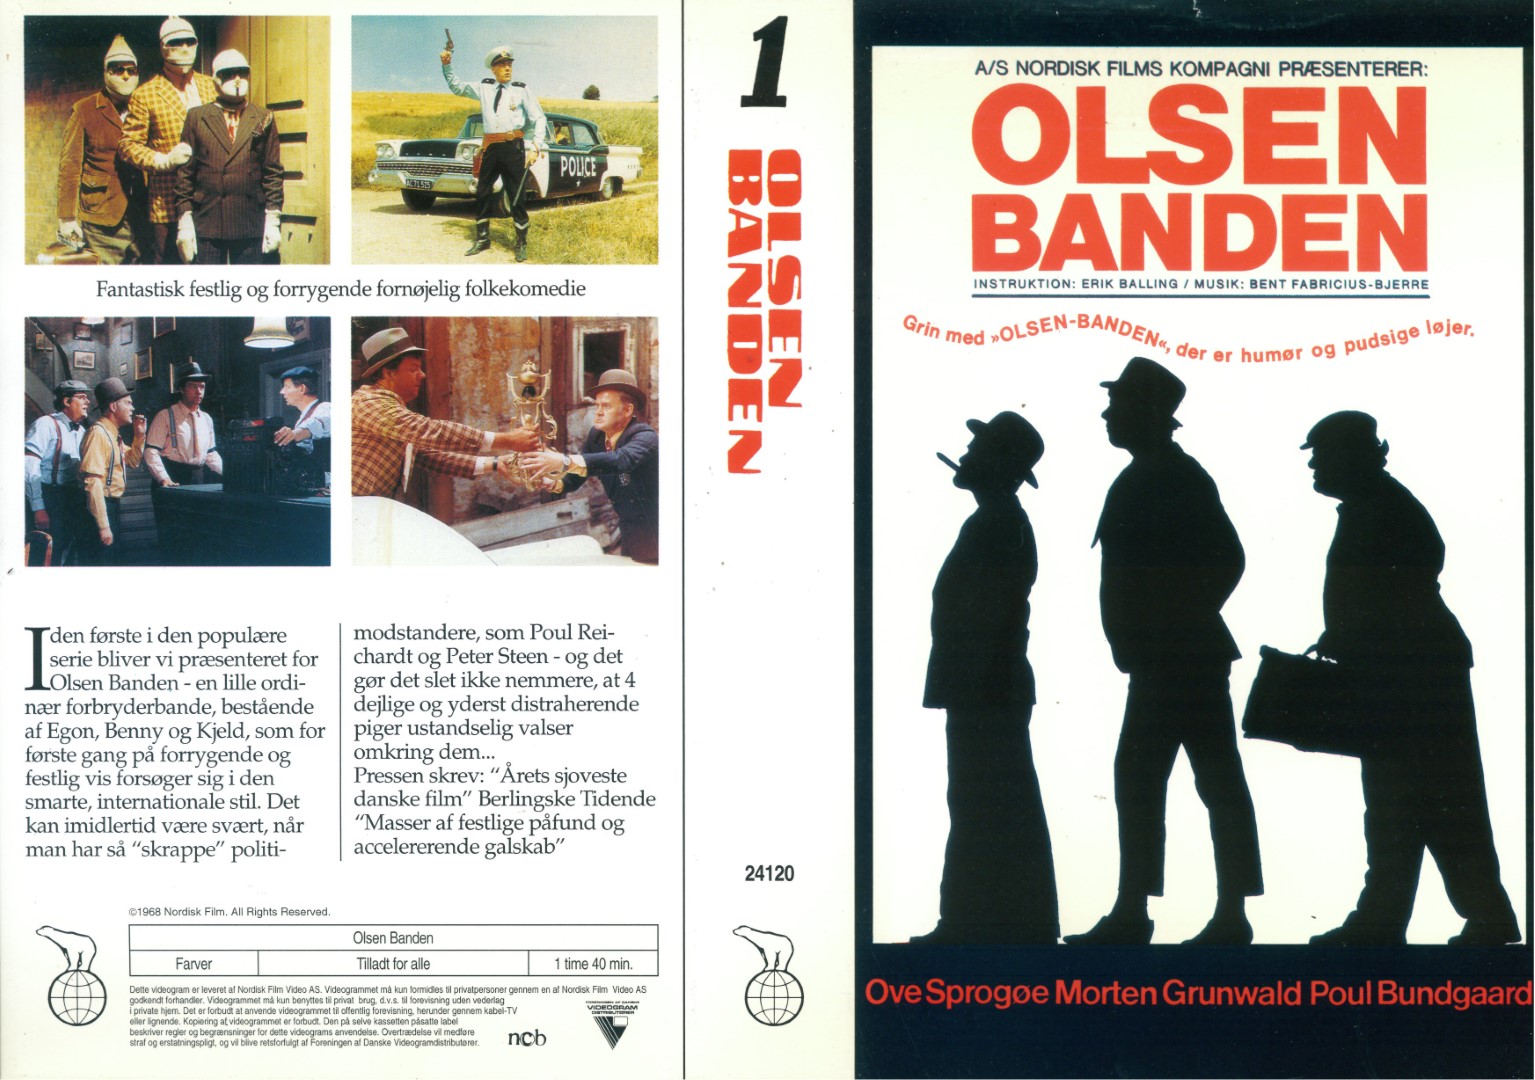 Olsen Banden  VHS Nordisk Film 1968